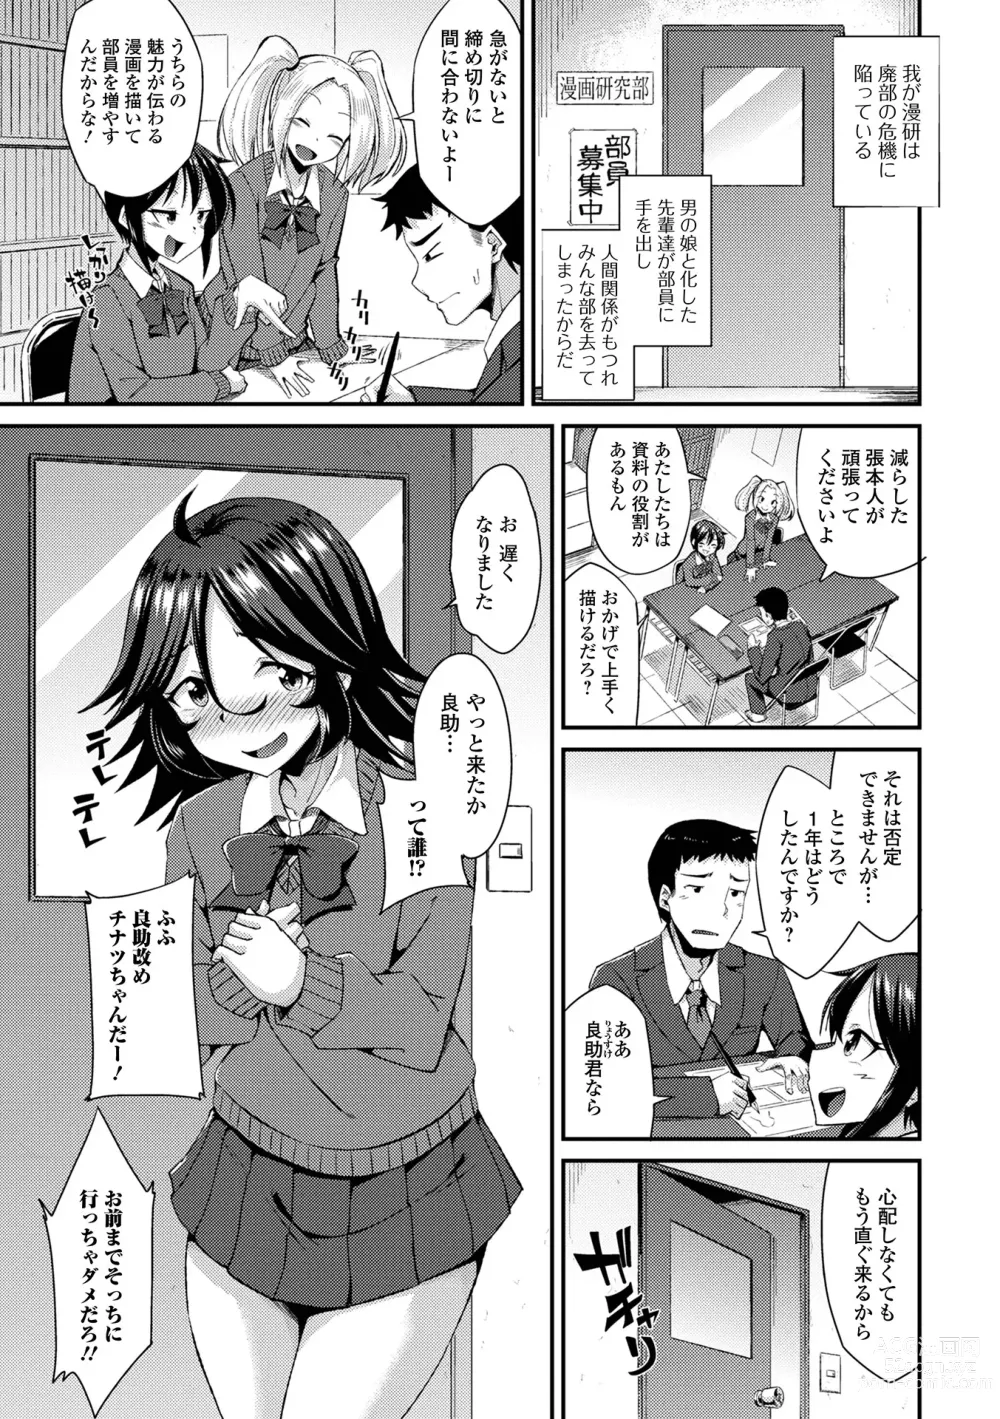 Page 7 of manga Gekkan Web Otoko no Ko-llection! S Vol. 94